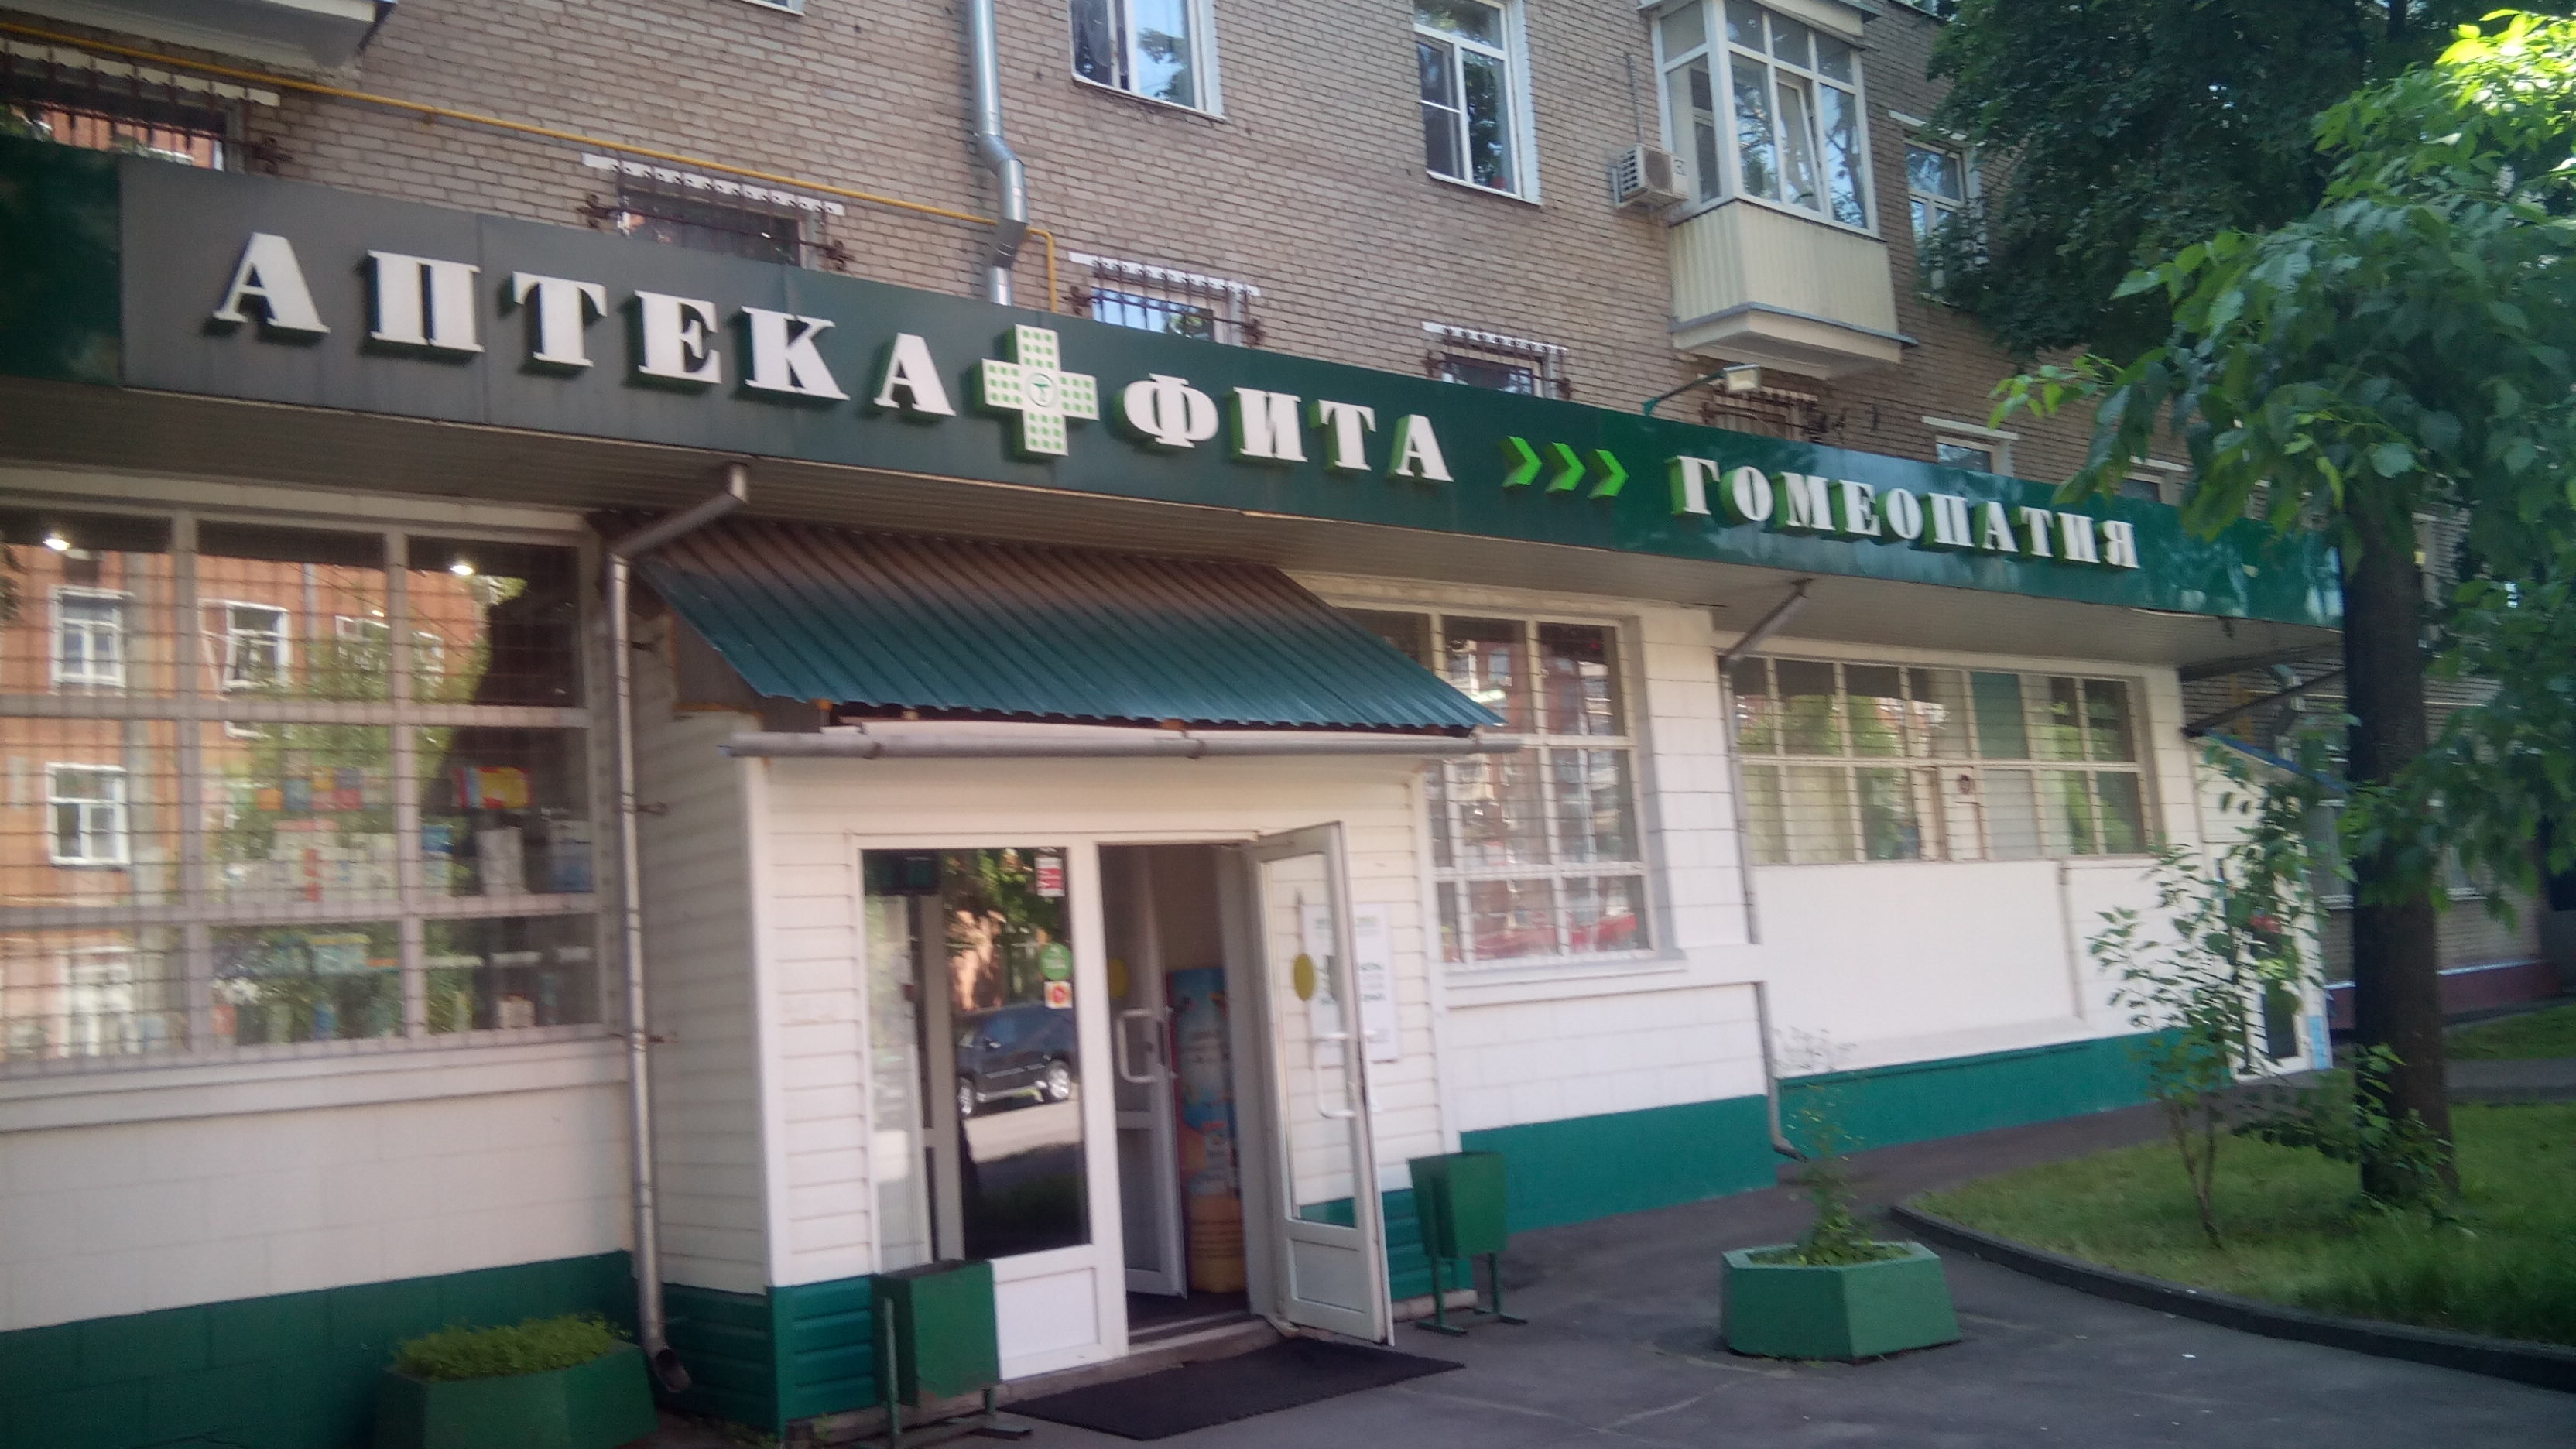 Гомеопатический центр новосибирск